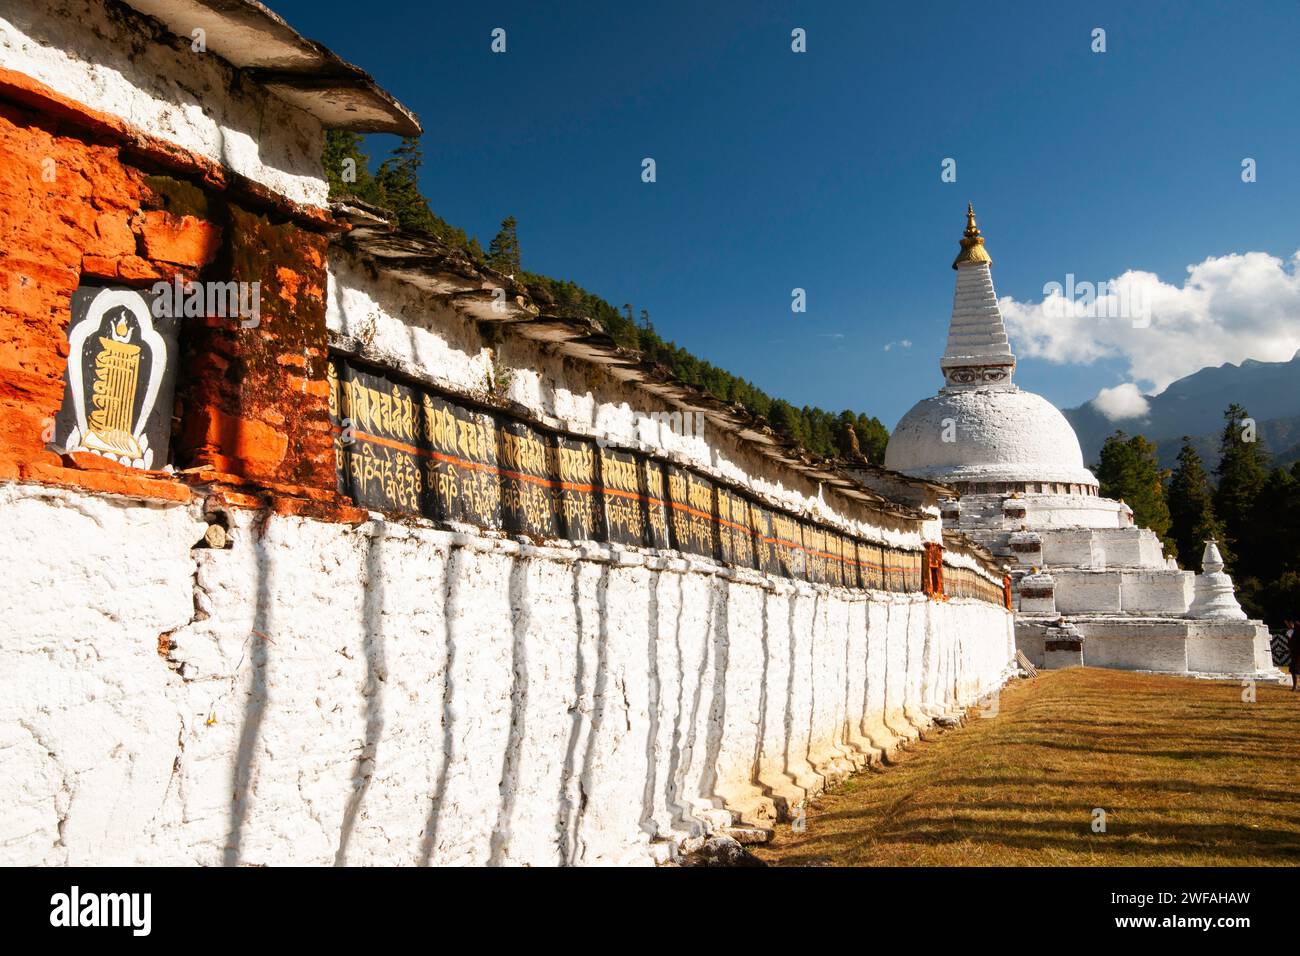 Nepalesen entwarfen Stupa in Bhutan zwischen Punaka und Trongsa, bekannt als Chendebji Chorten in Bhutan, Asien Stockfoto